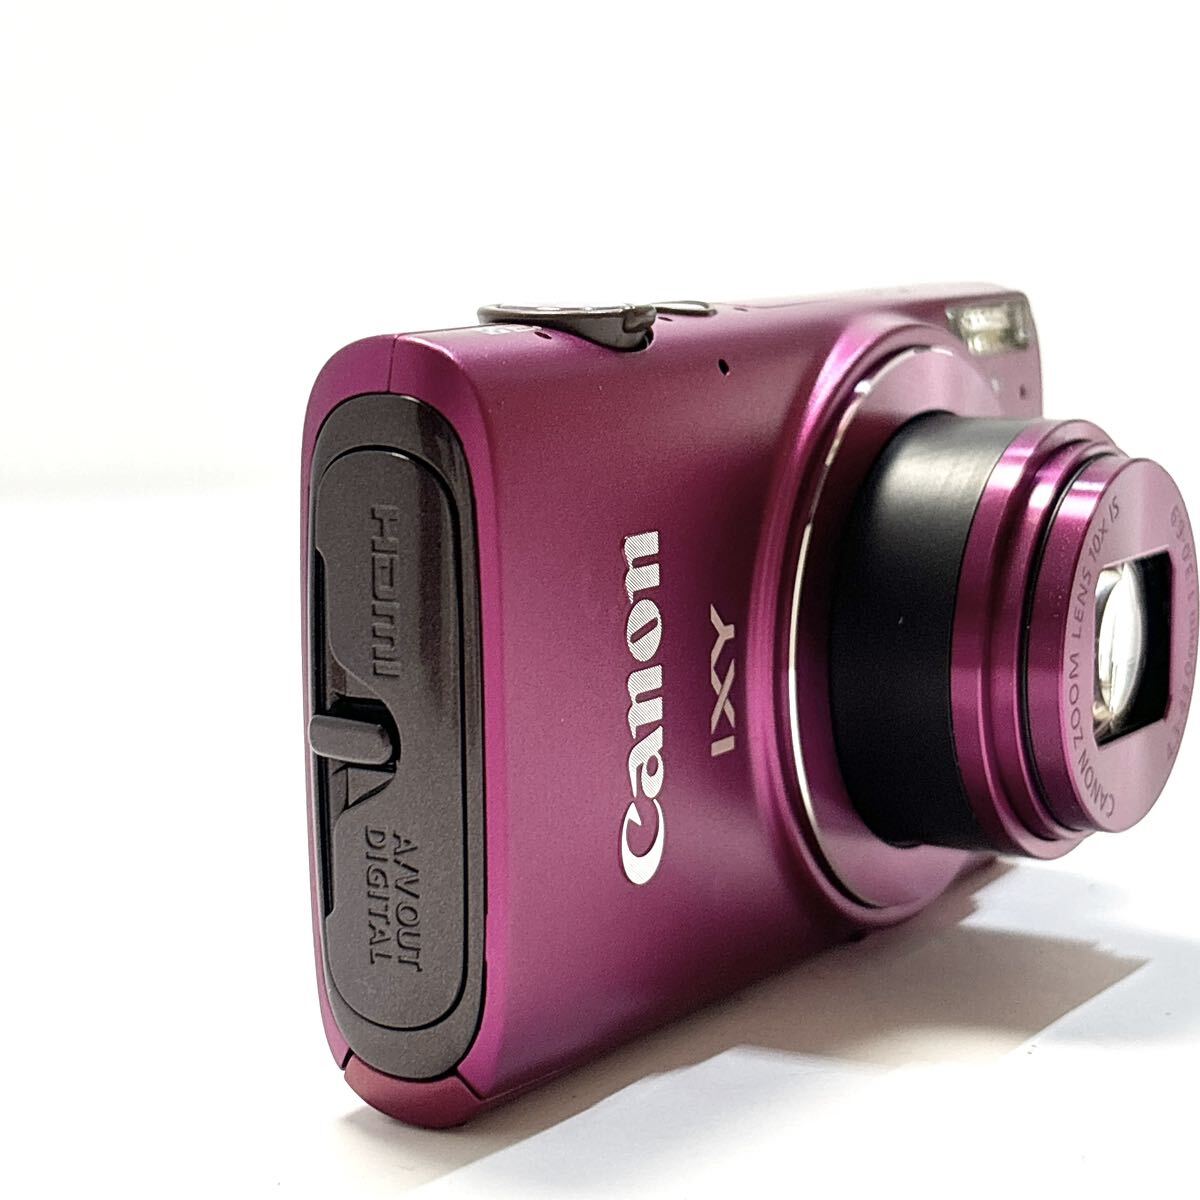 Canon キャノン IXY 620F PC2013 4.3-43.0mm 1:3.0-6.9 コンパクトデジタルカメラ ピンク alpひ0228_画像8